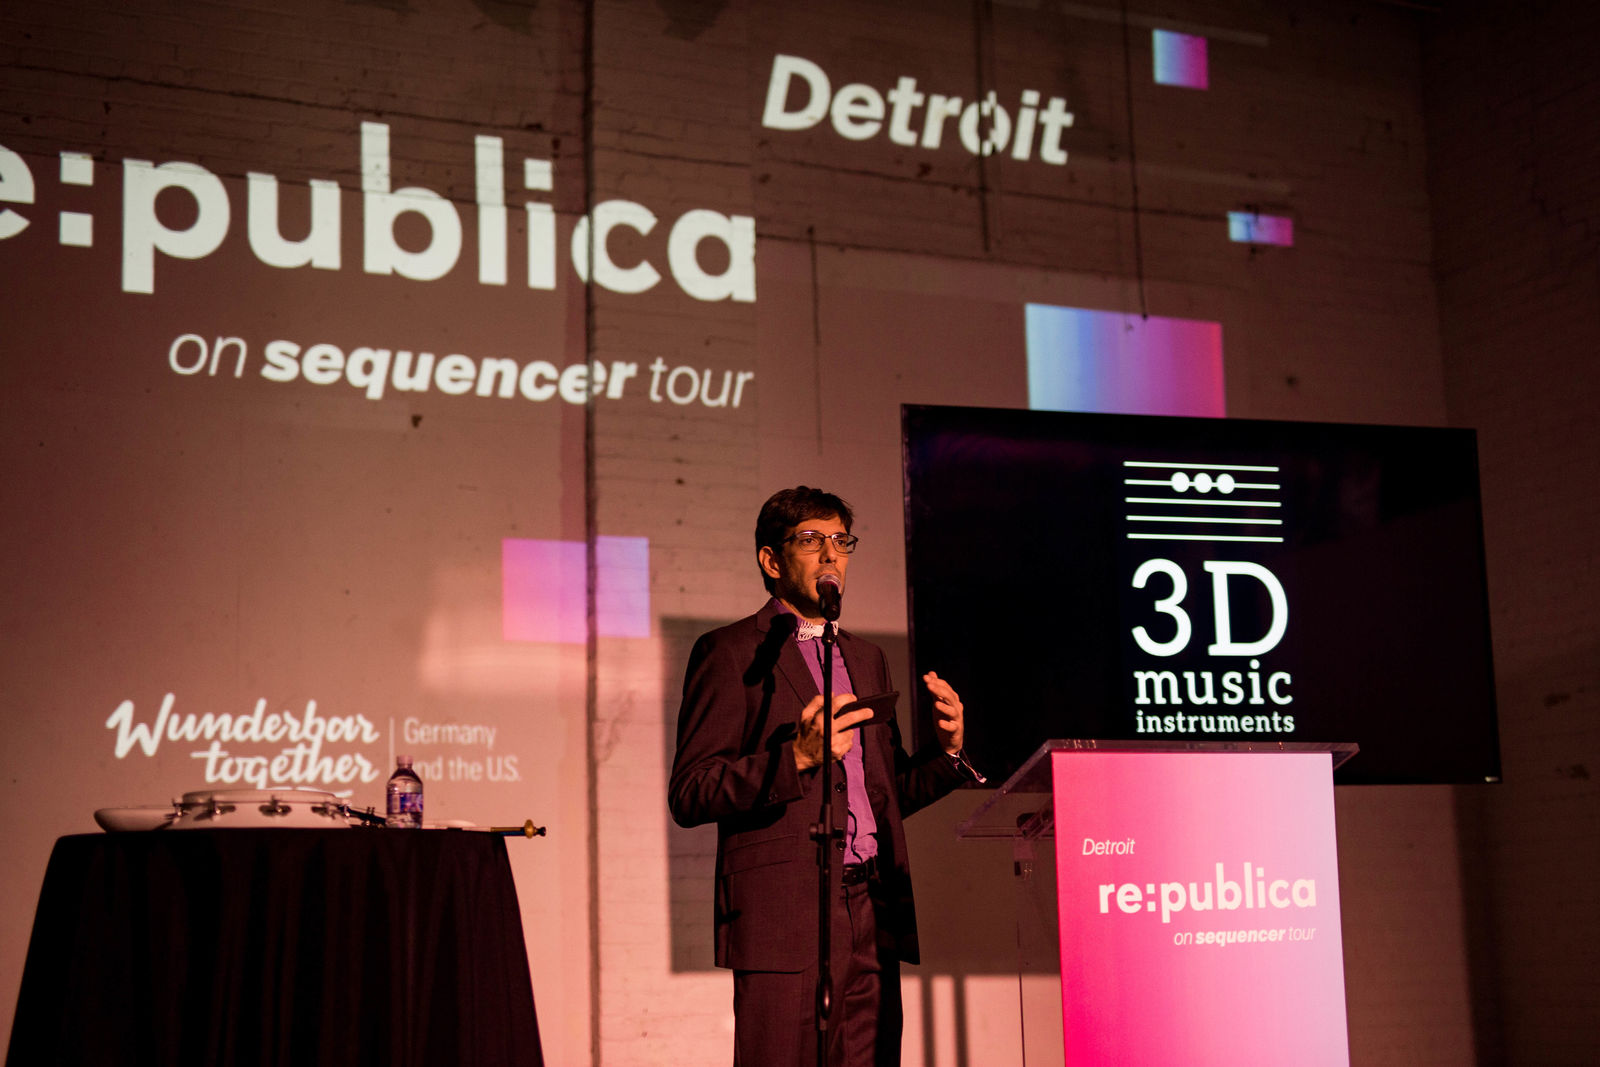 Volkswagen begleitet Europas größte Digital- und Gesellschaftskonferenz re:publica nach Detroit